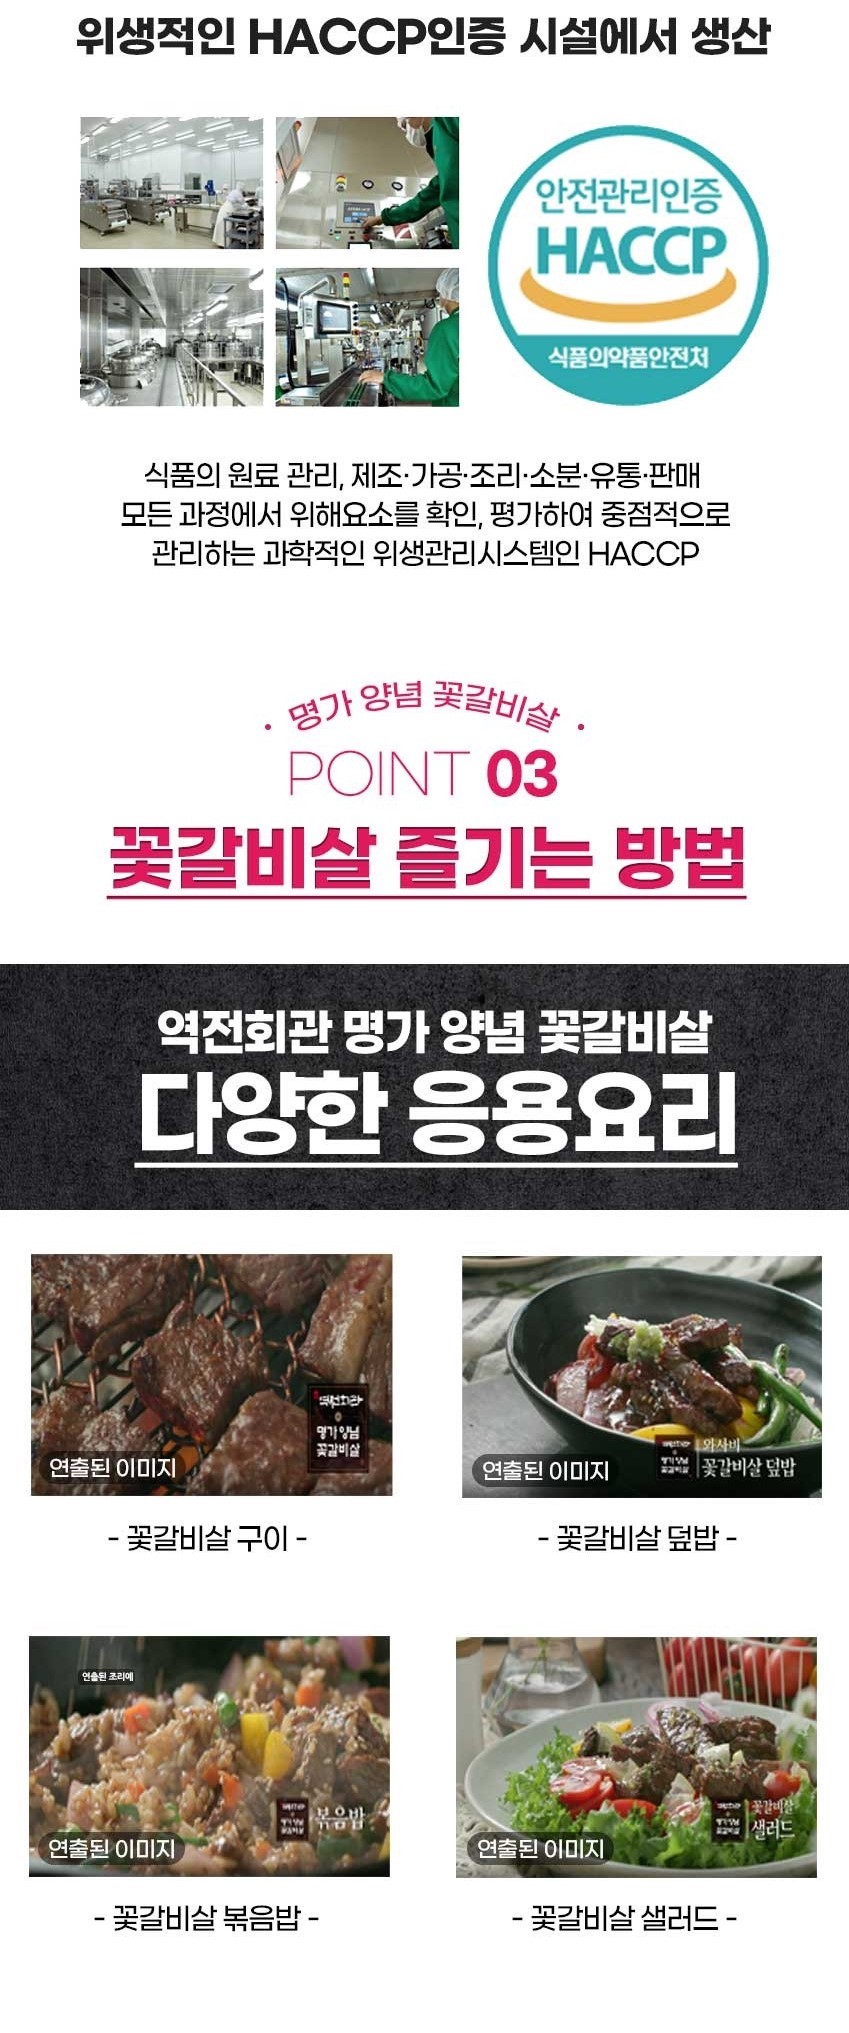 韓國食品-[Yukjeon] 醬醃牛排骨 300g